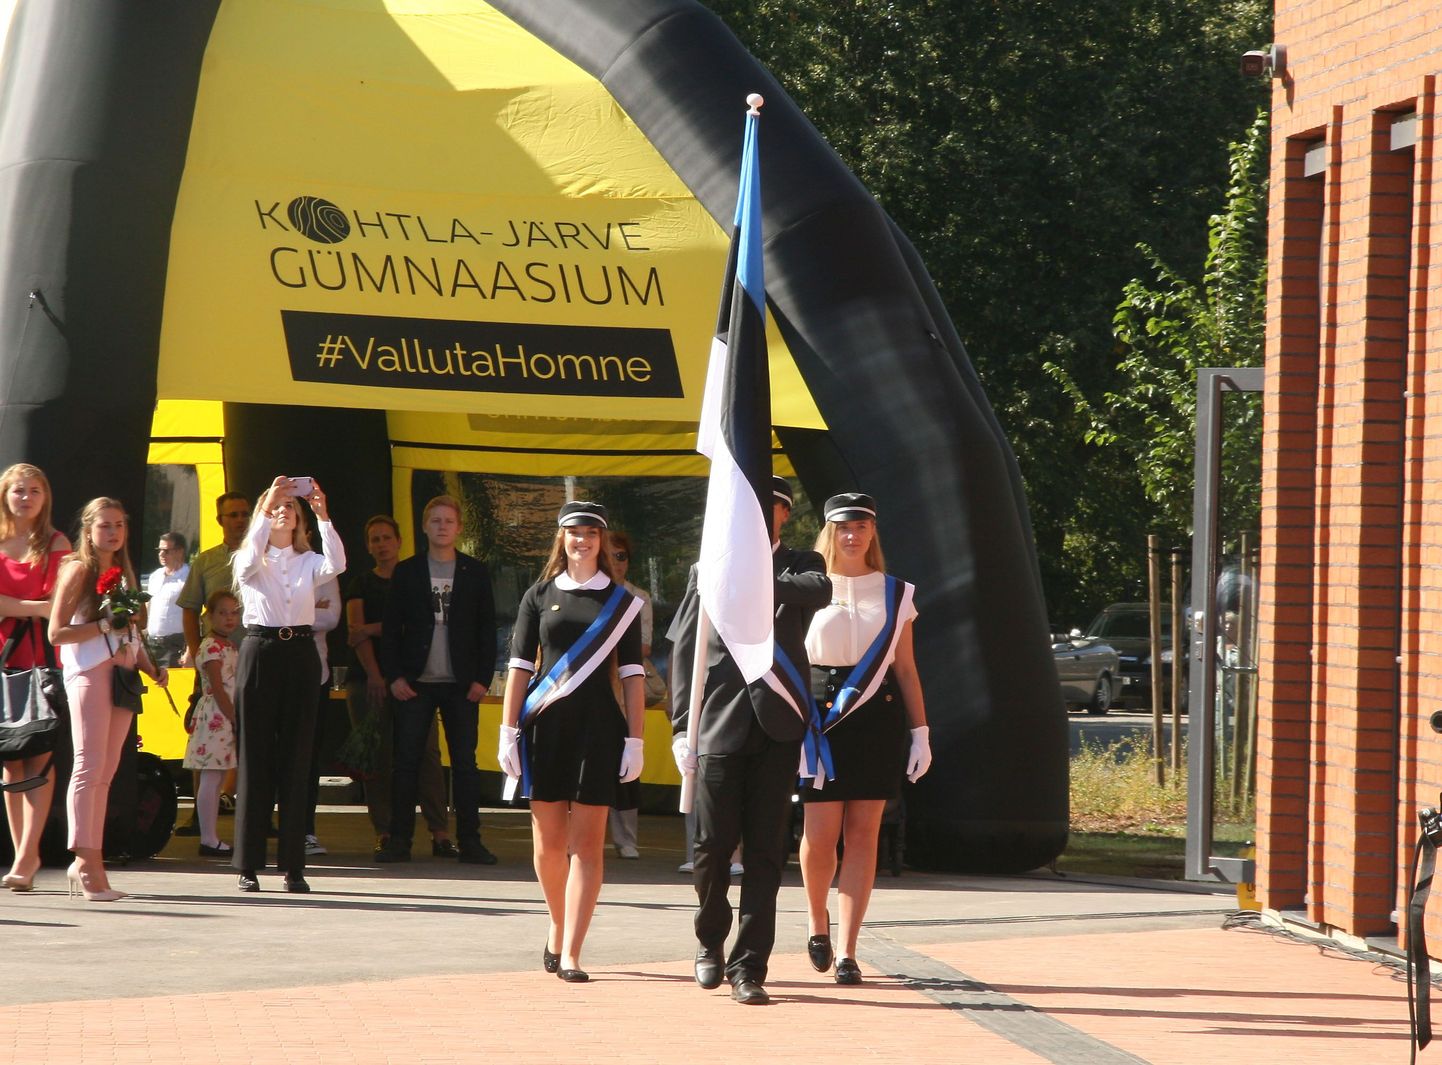 В сентябре в Кохтла-Ярве открывает двери новая госгимназия, в ходе создания которой произошел охвативший всю Эстонию спор об учебном языке в новой школе.